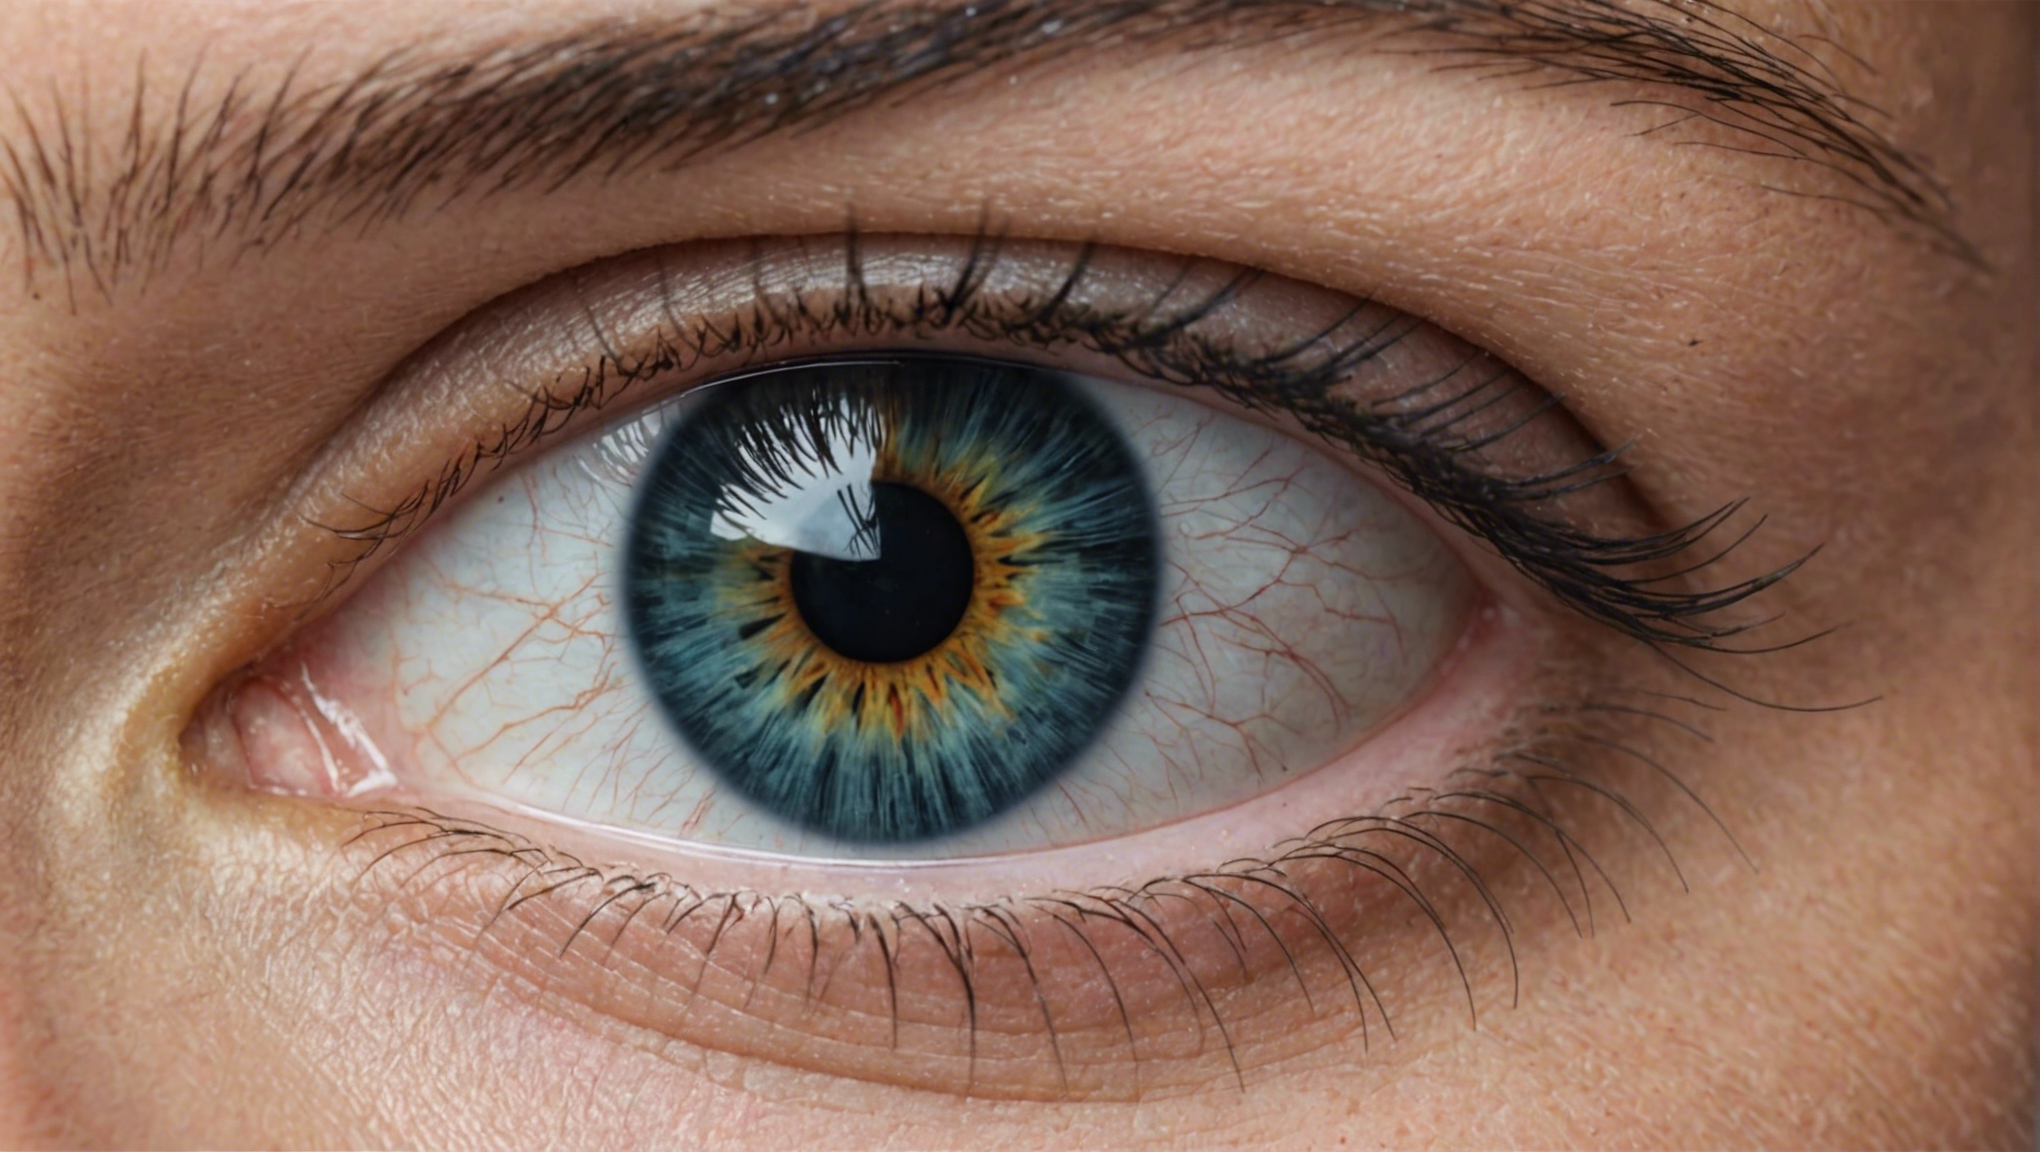 découvrez l'opération des yeux à strasbourg pour améliorer votre vision avec une solution efficace et sûre. prenez rendez-vous pour retrouver une vision nette et précise.